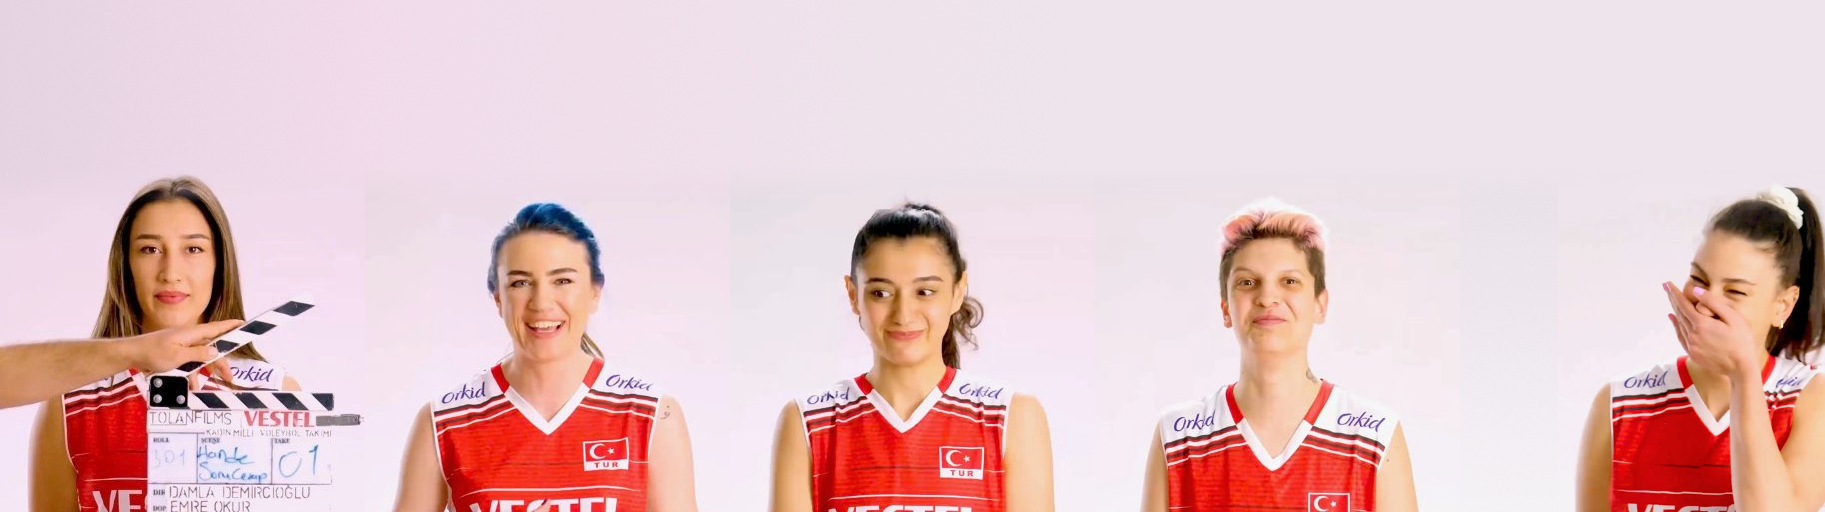 Tolan Films: Turkish Women’s Volleyball Team